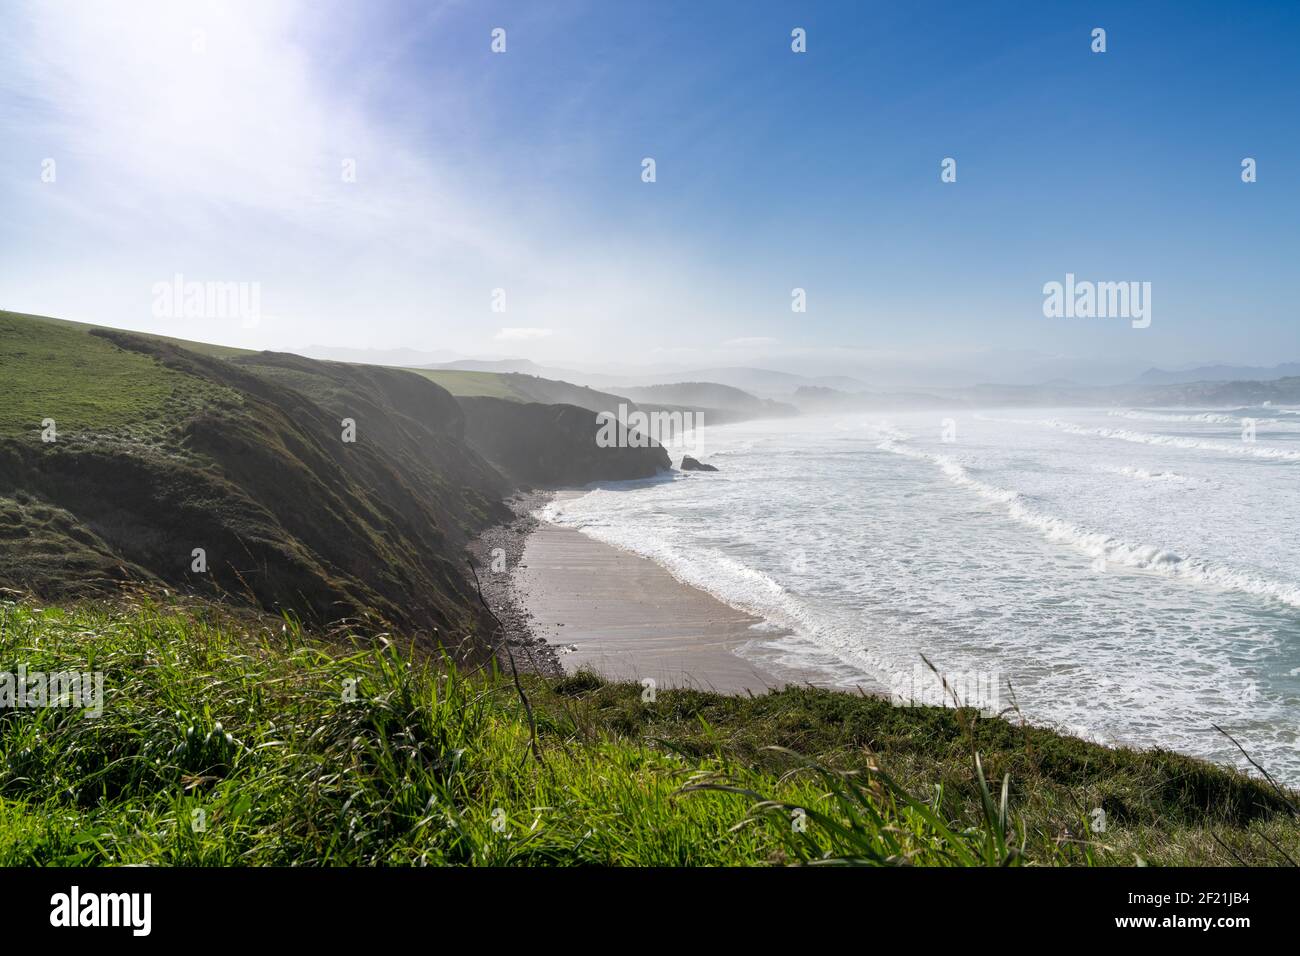 Hohe grüne grasbewachsene Klippen fallen hinunter zur Ozeanküste In Nordspanien Stockfoto